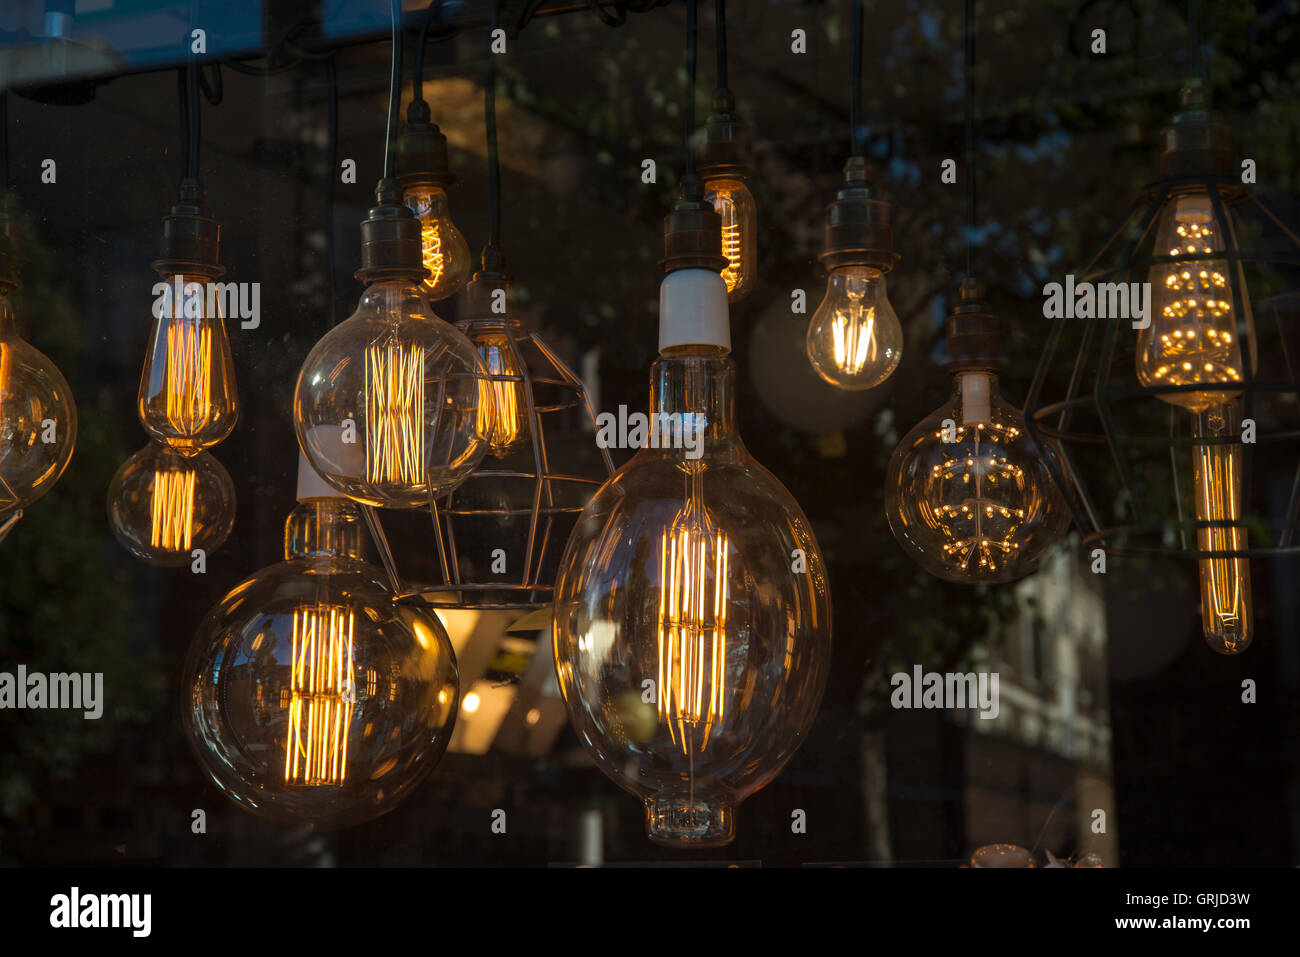 Ampoules à hanging in a shop window d'éclairage Banque D'Images